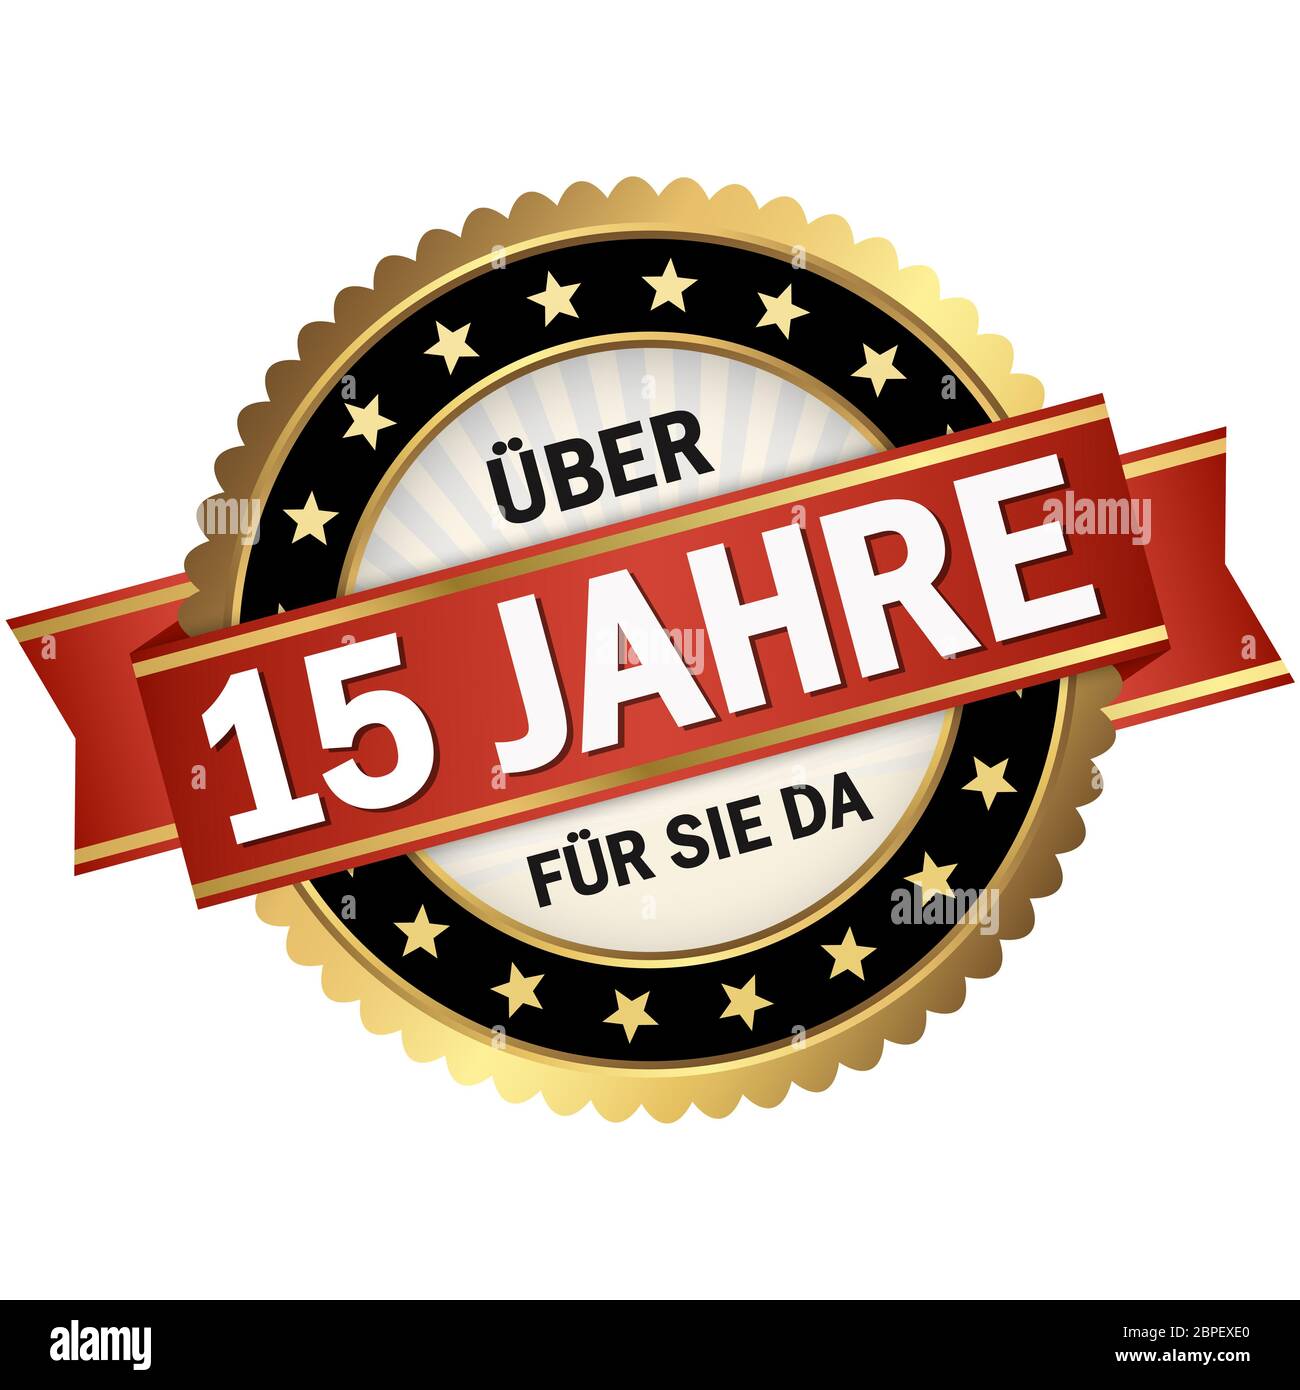 Round sigillo di qualità con telaio nero, banner rosso e il testo di oltre quindici anni per voi (in tedesco) Foto Stock